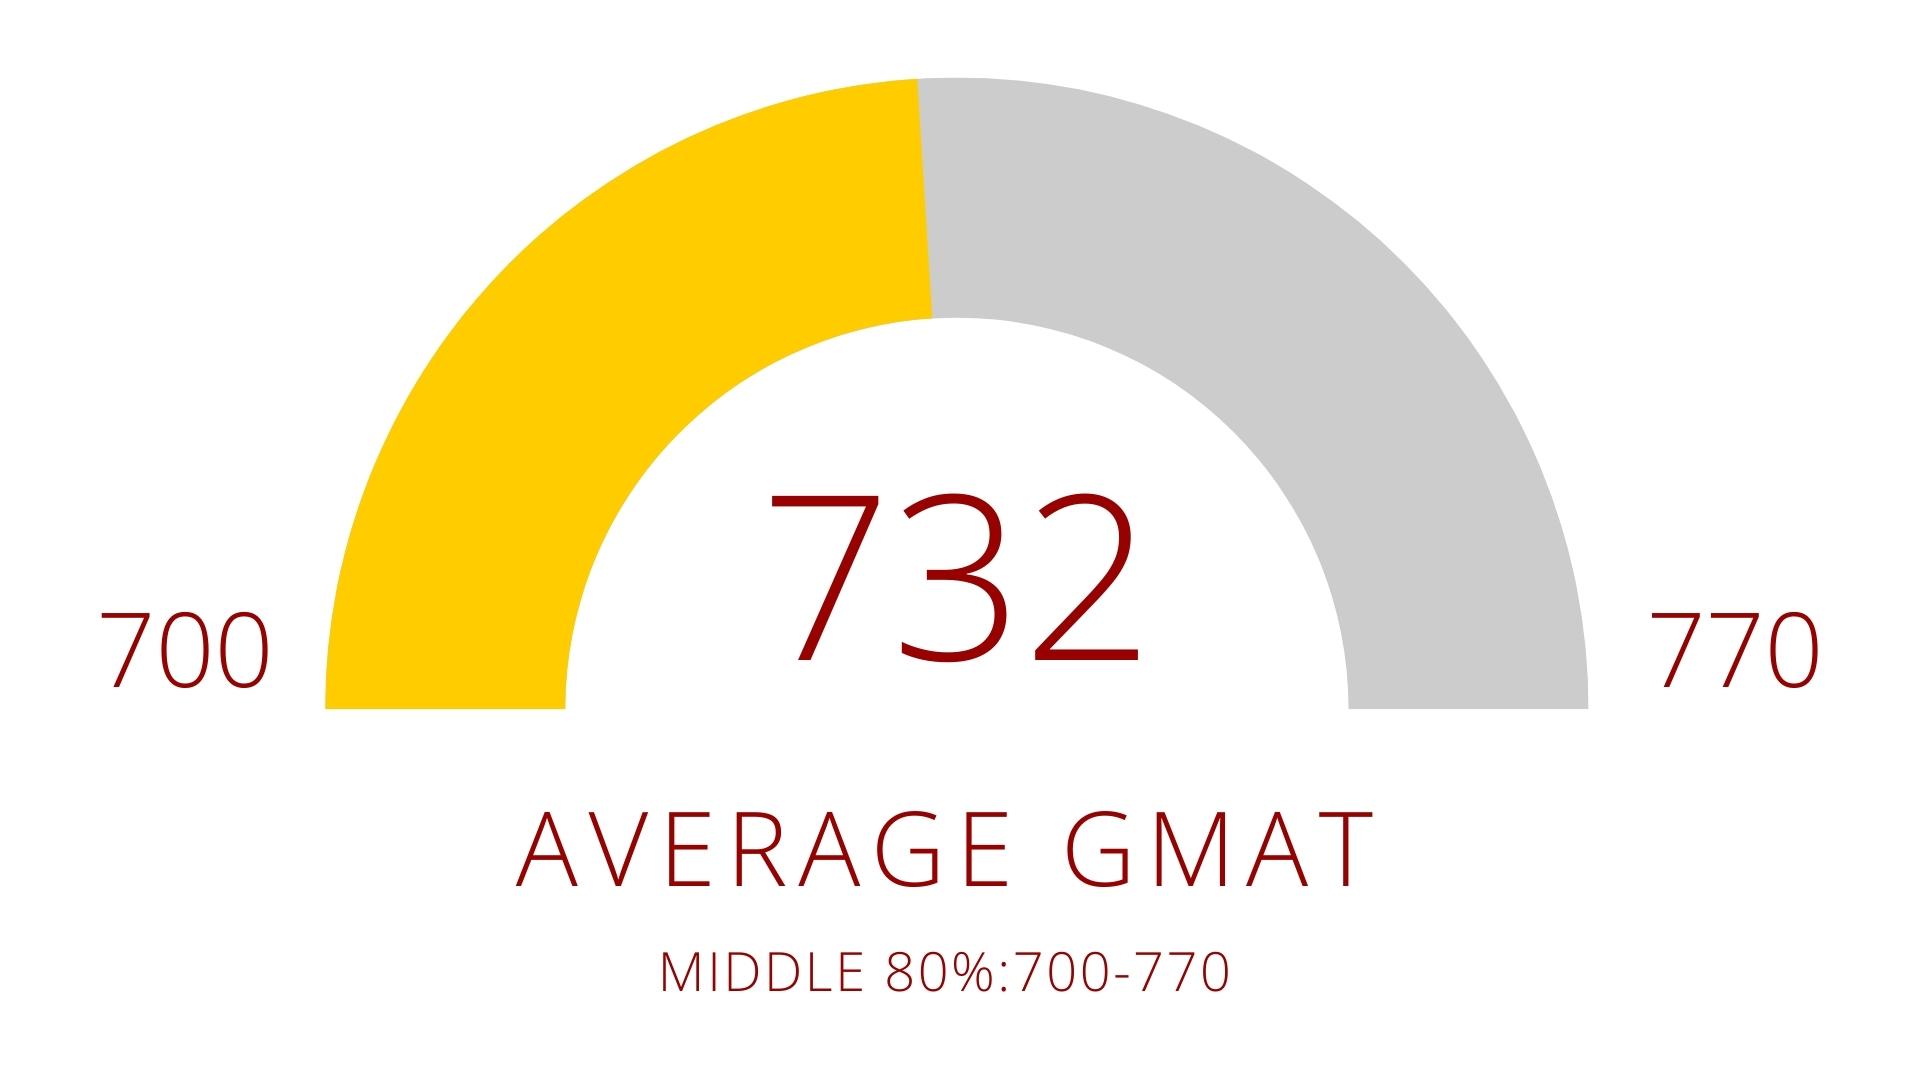 732 average GMAT (middle 80%: 700-770)